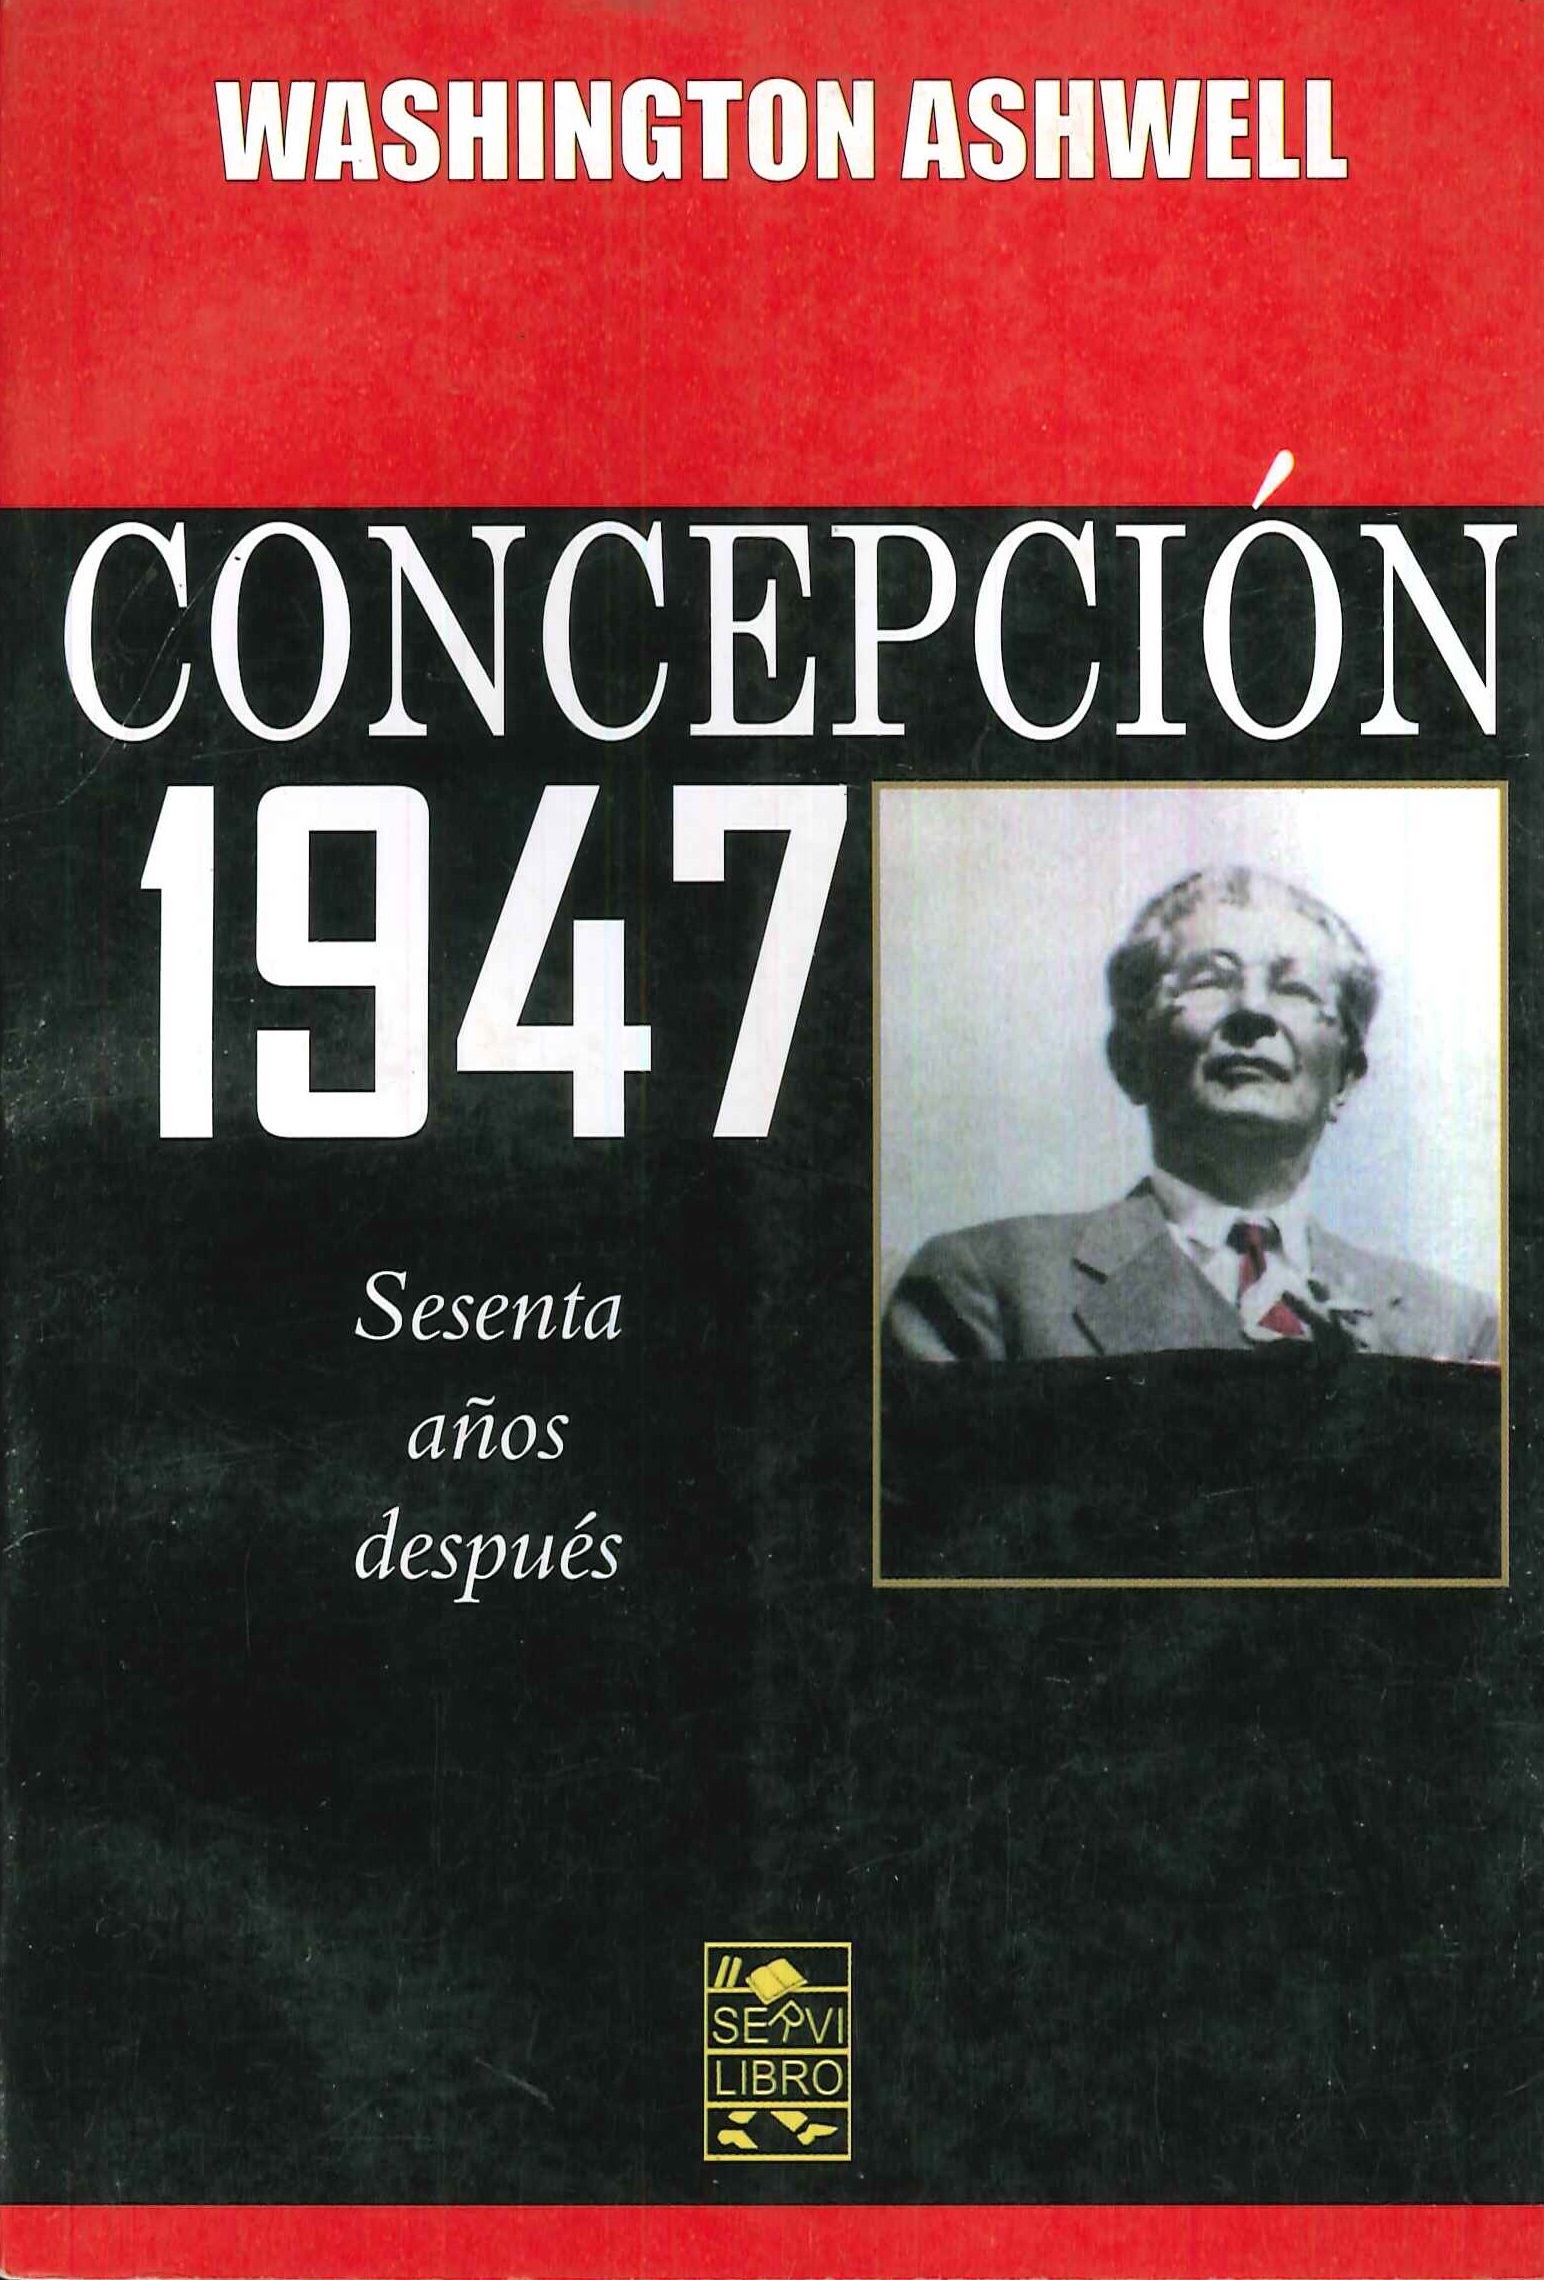 Concepcion 1947